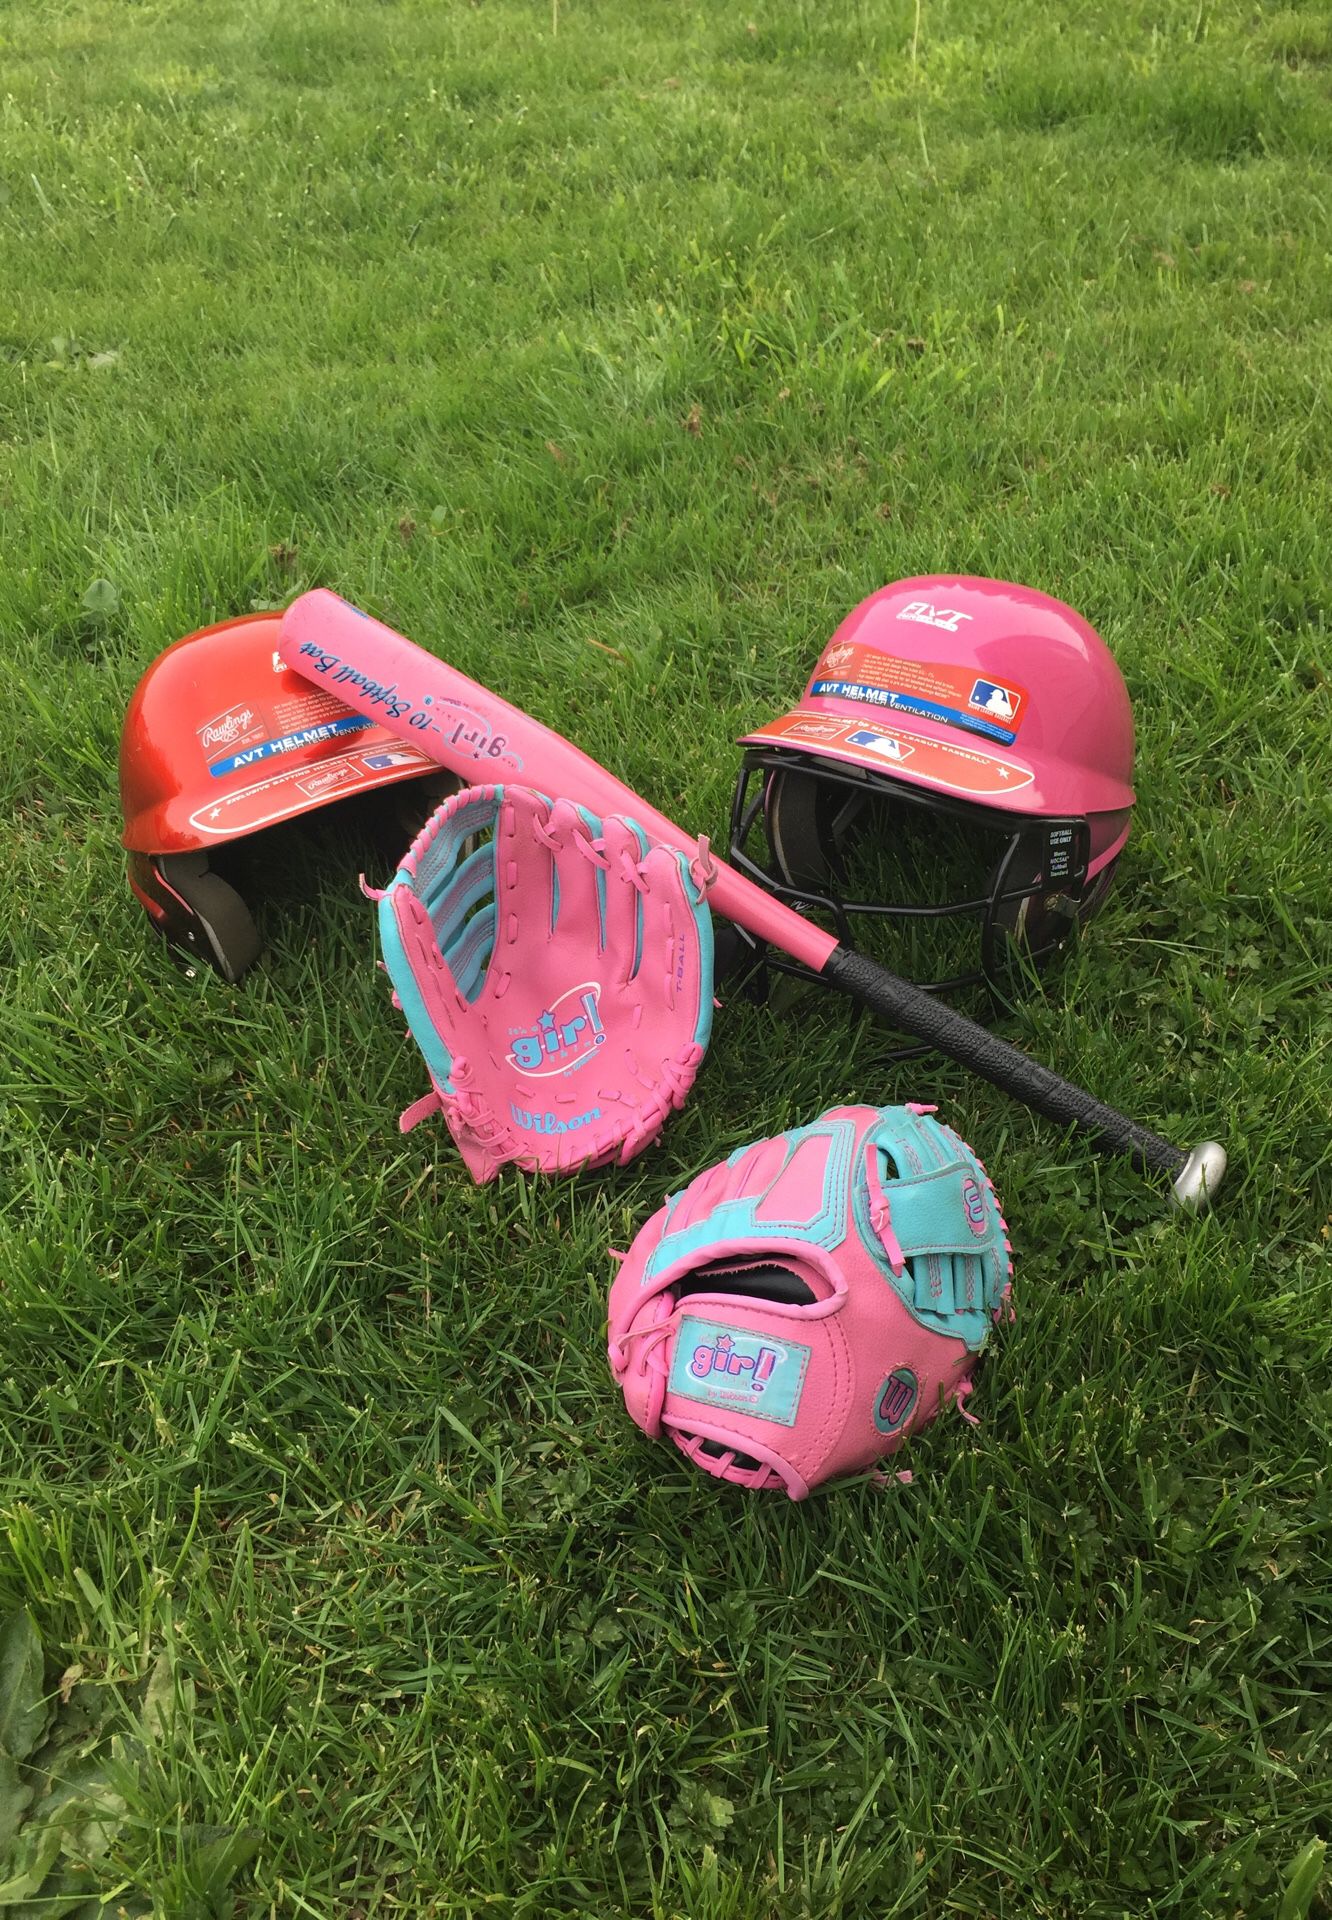 BASEBALL KIT: 2 AVT Baseball Helmets, 2 Pink Wilson Girls T-Ball Gloves, & 1 Pink Wilson Softball Bat (CAN BE SOLD SEPARATELY)